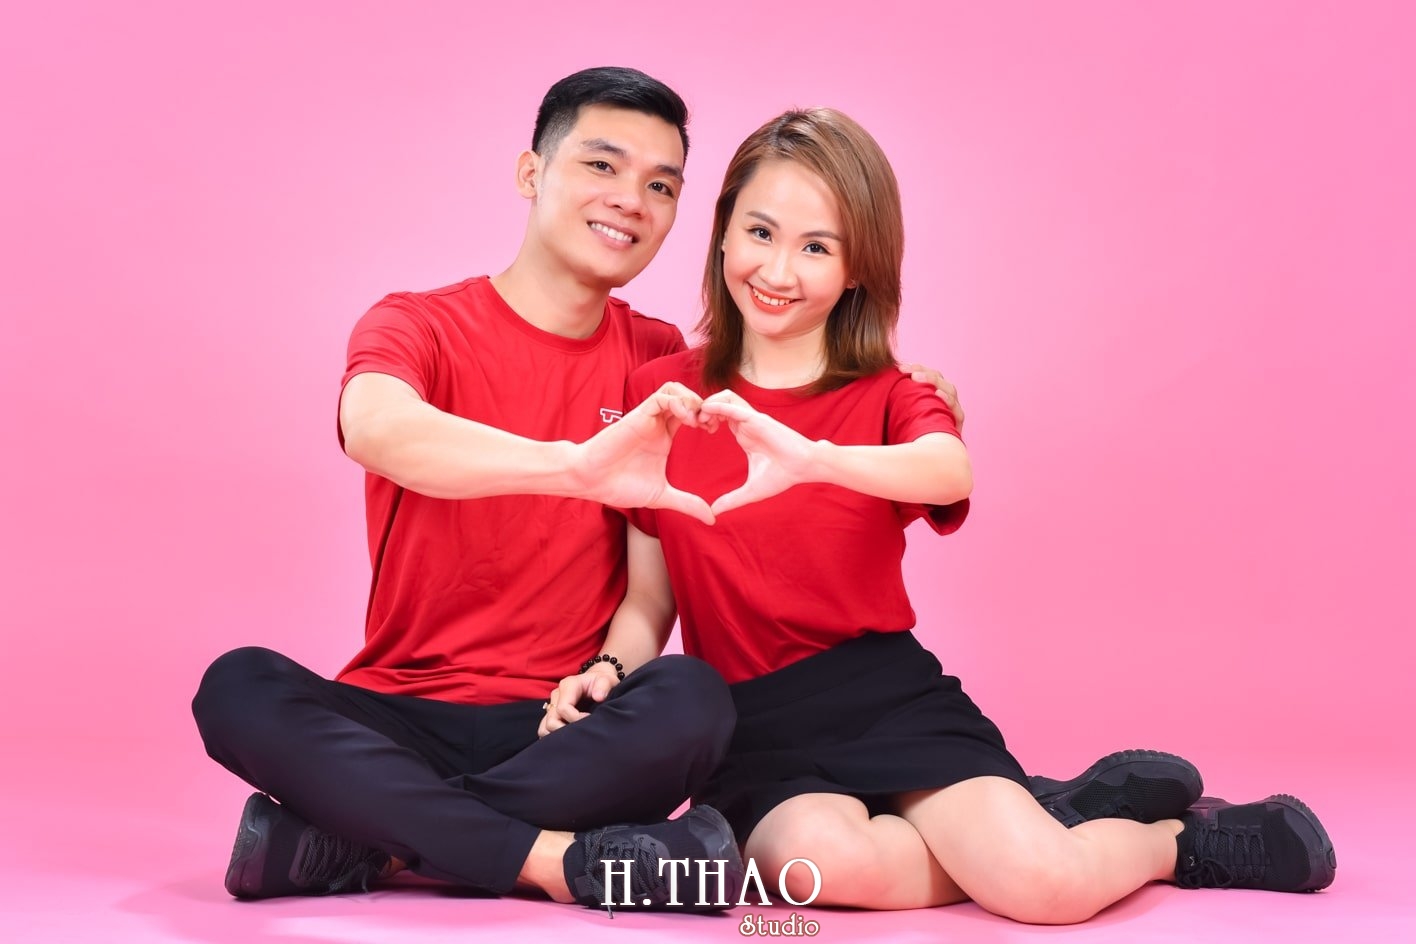 Anh couple 17 min - Concept chụp ảnh đôi hàn quốc HOT nhất hiện nay- HThao Studio